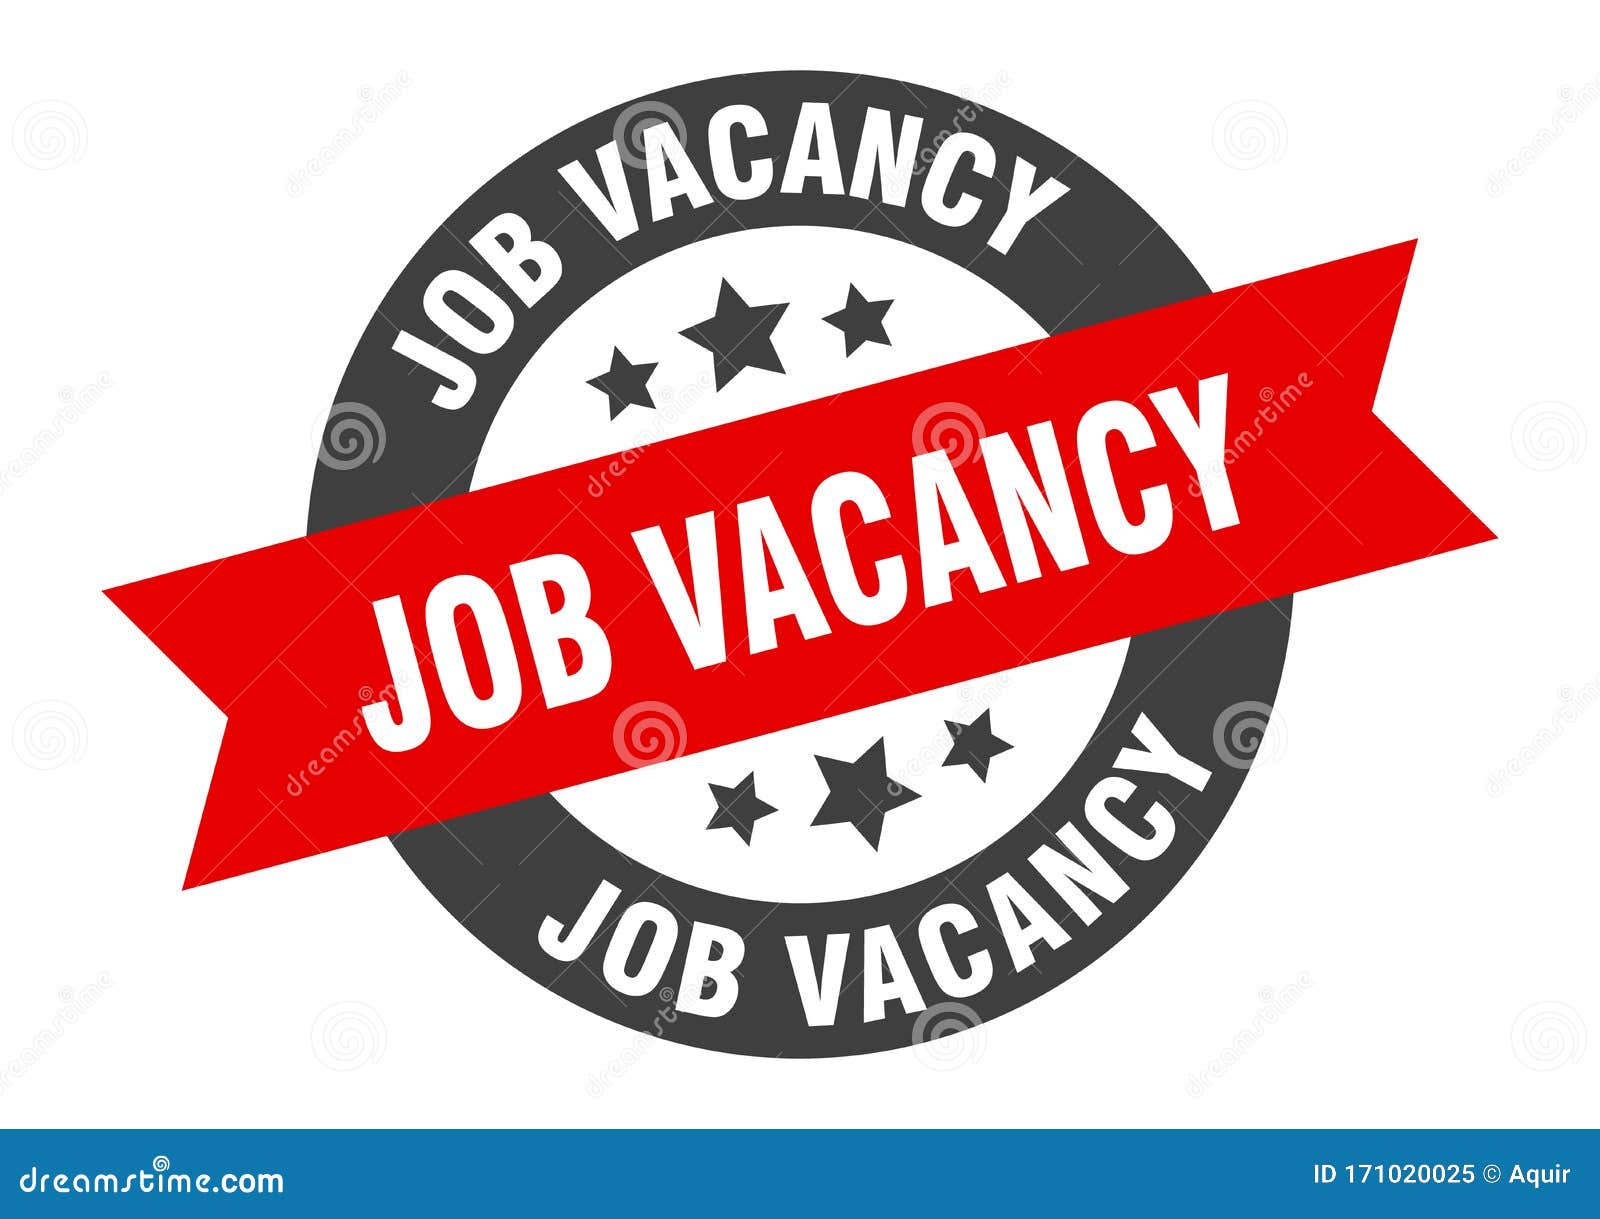 Warehouse Operatives Job Proactive Technical Recruitment Milton Keynes